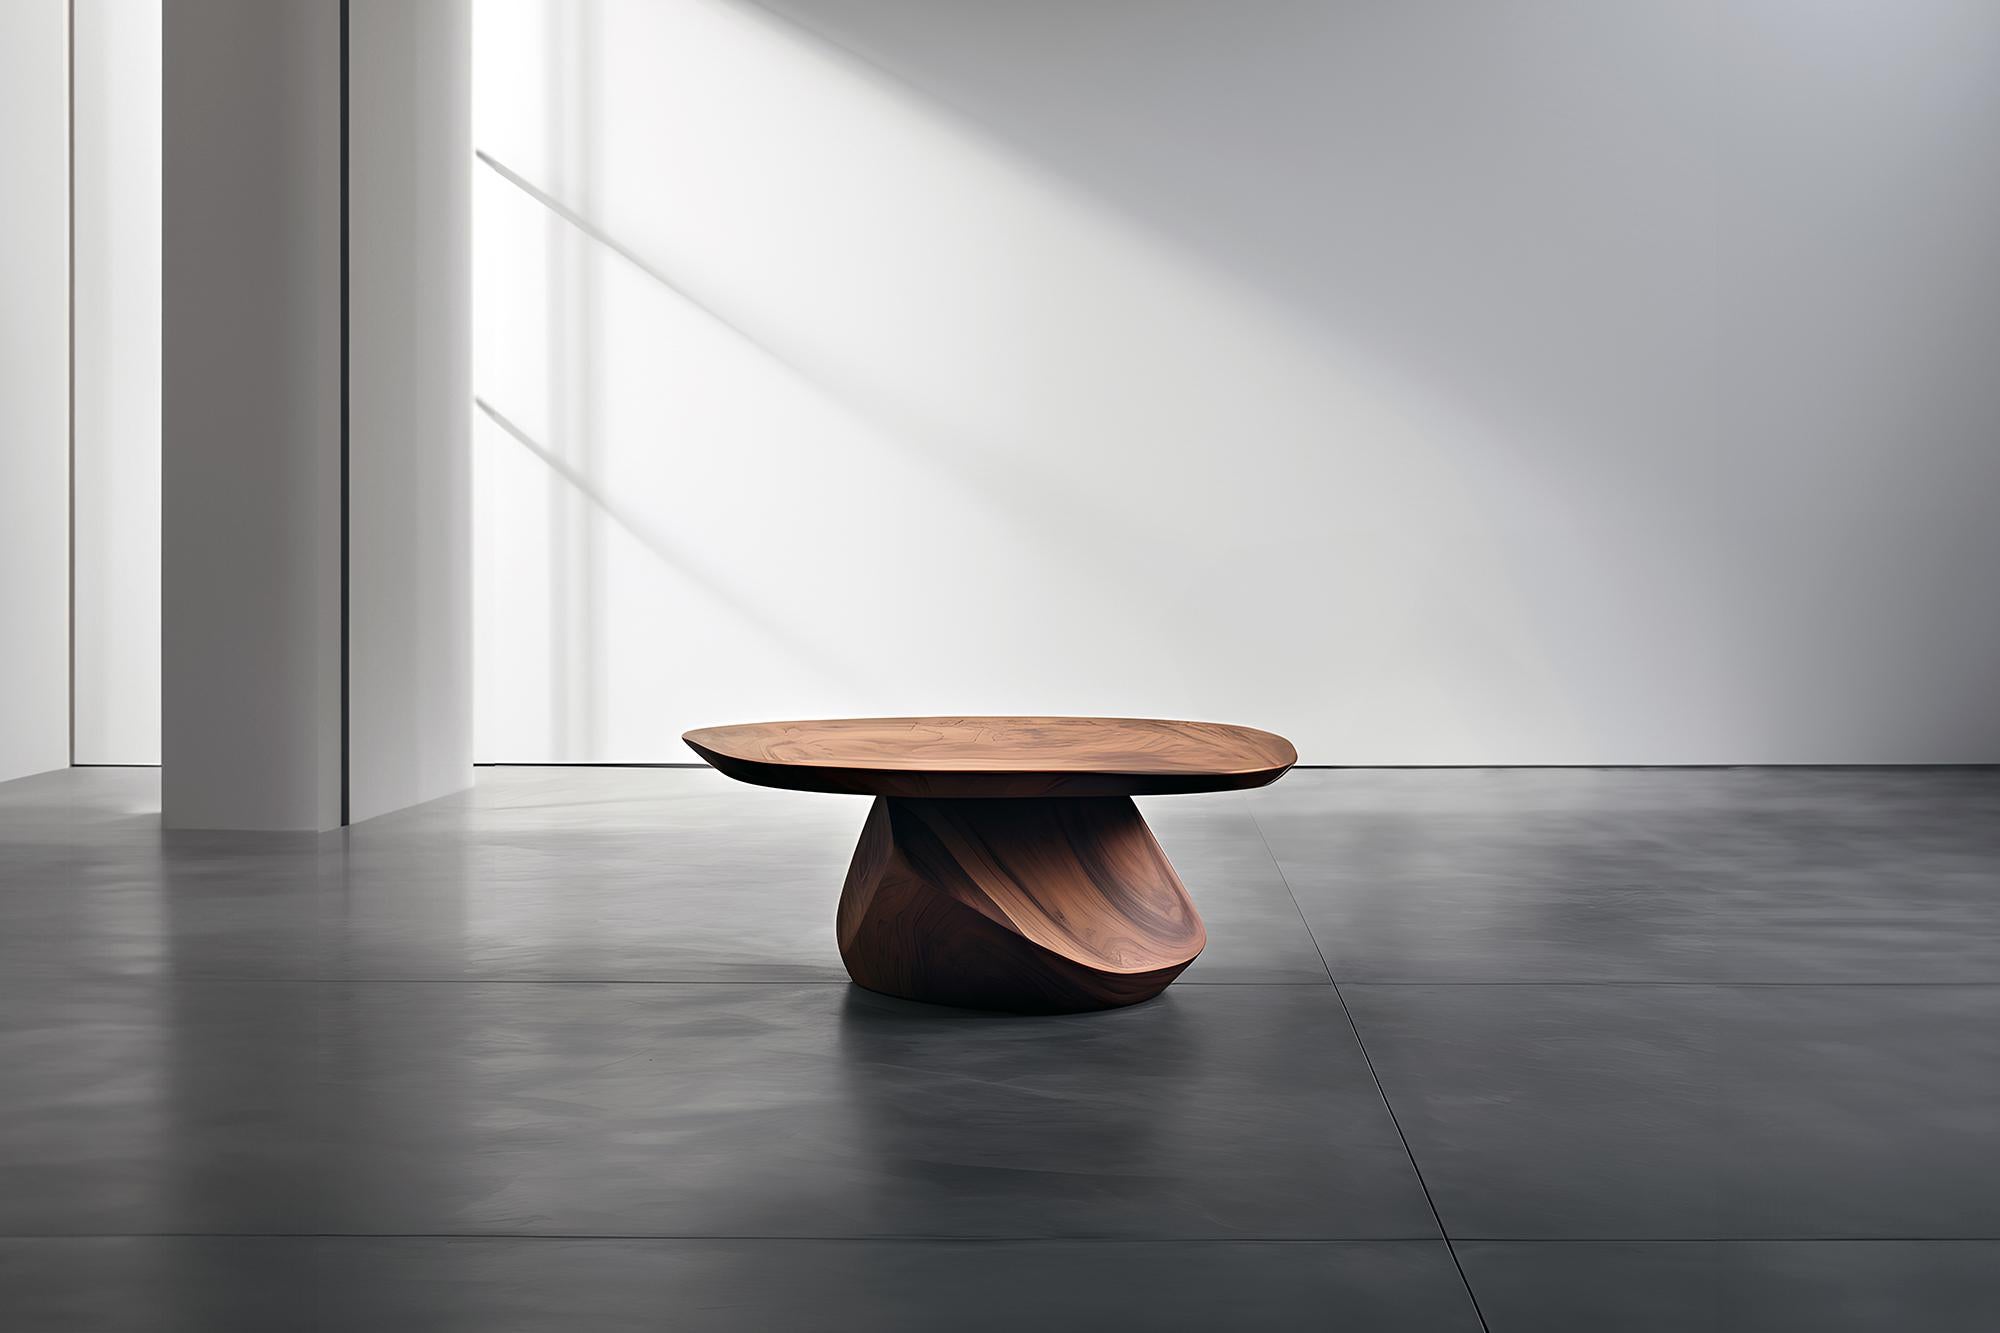 Skulpturaler Couchtisch aus Massivholz, Center Table Solace S38 von Joel Escalona


Die Tischserie Solace, entworfen von Joel Escalona, ist eine Möbelkollektion, die dank ihrer sinnlichen, dichten und unregelmäßigen Formen Ausgewogenheit und Präsenz